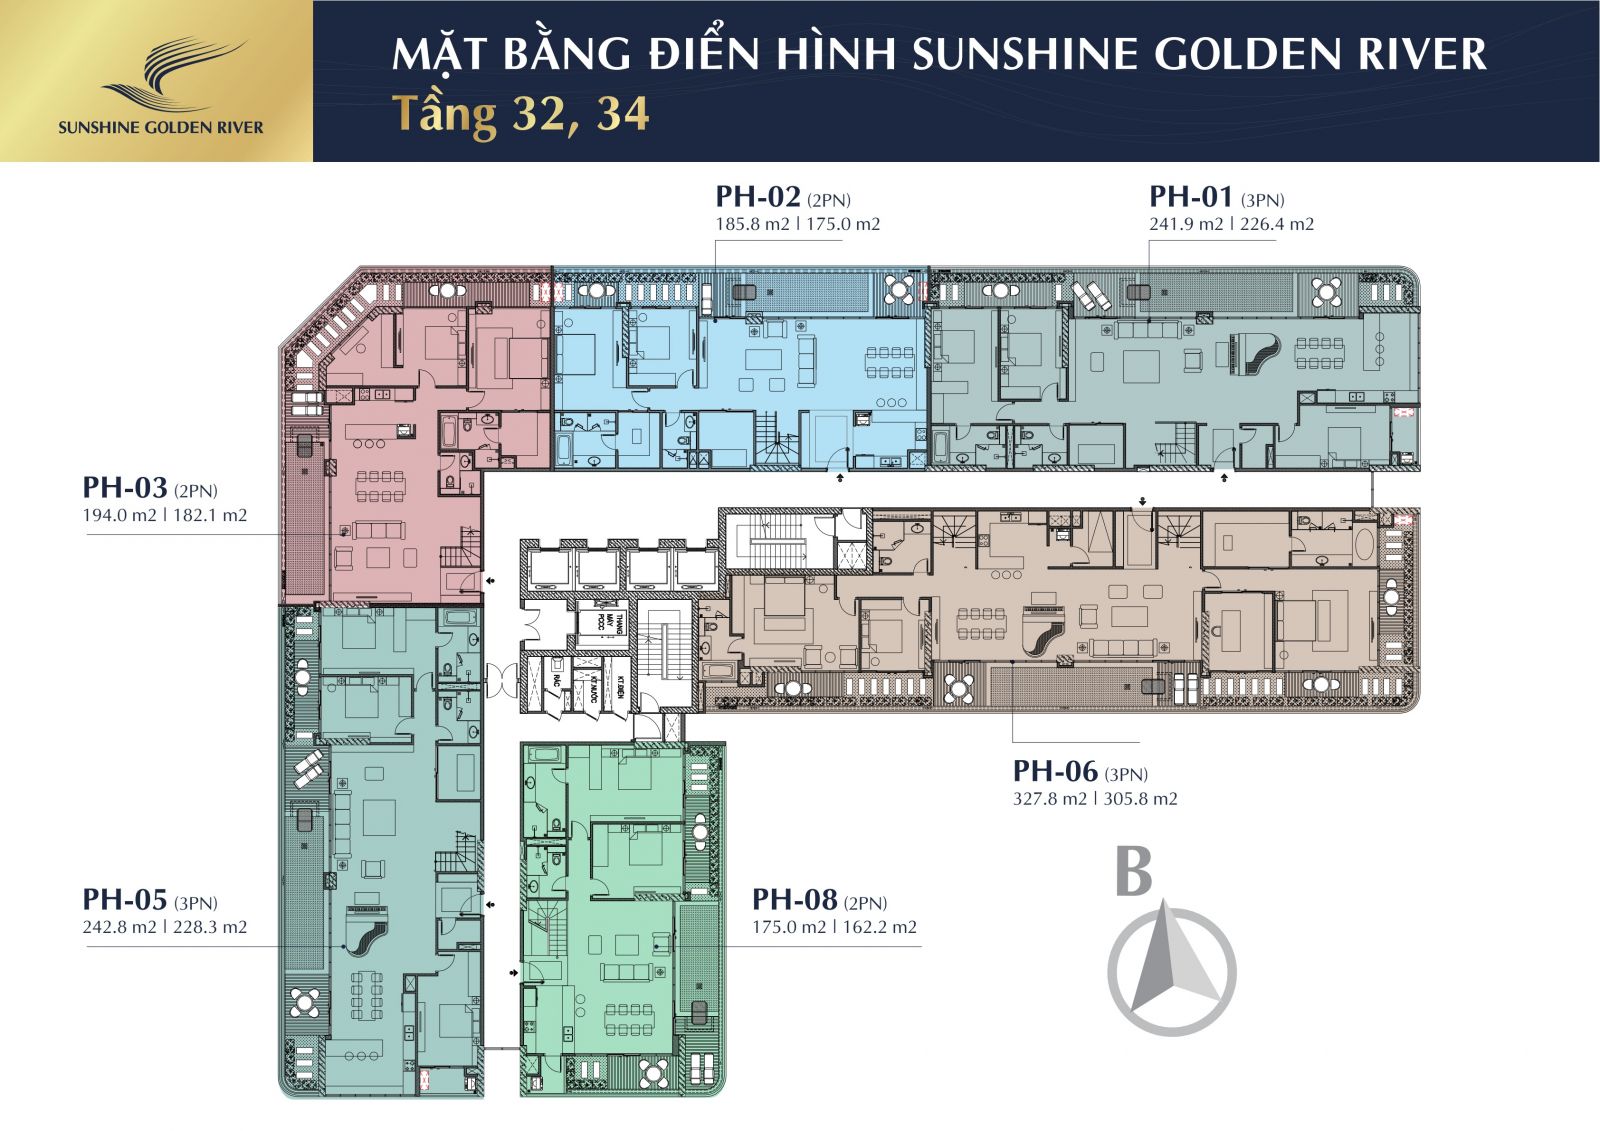 The floor plan of Sunshine Golden River